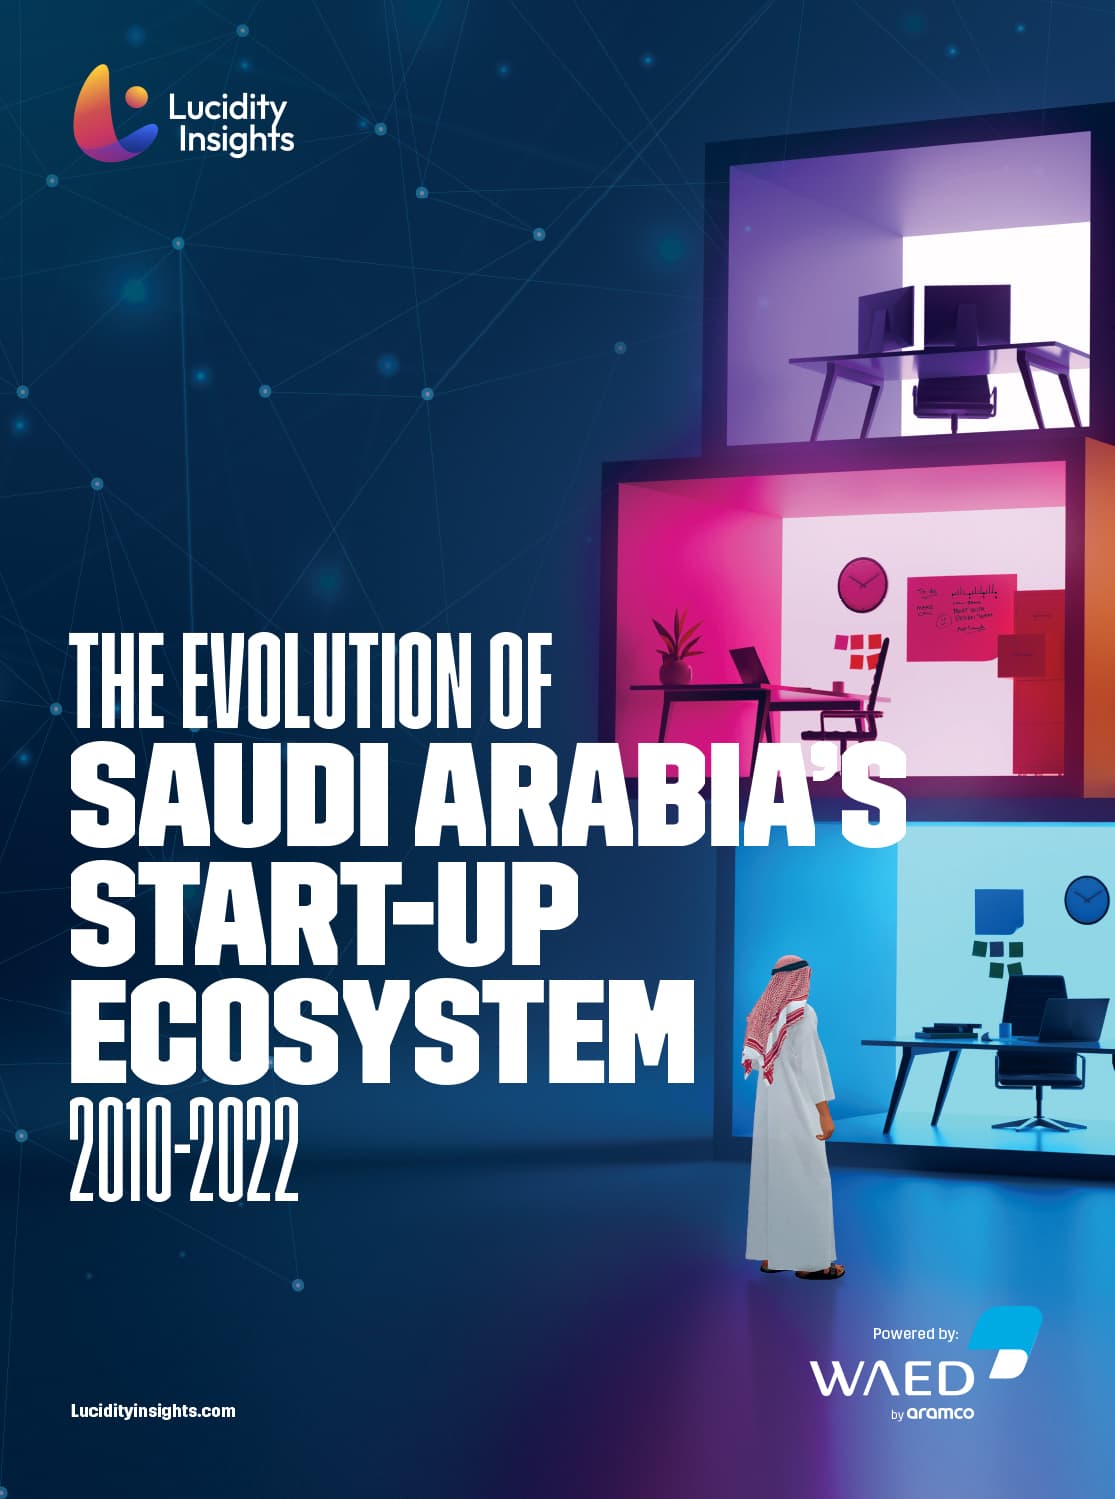 Saudi Arabia's Startup Ecosystem